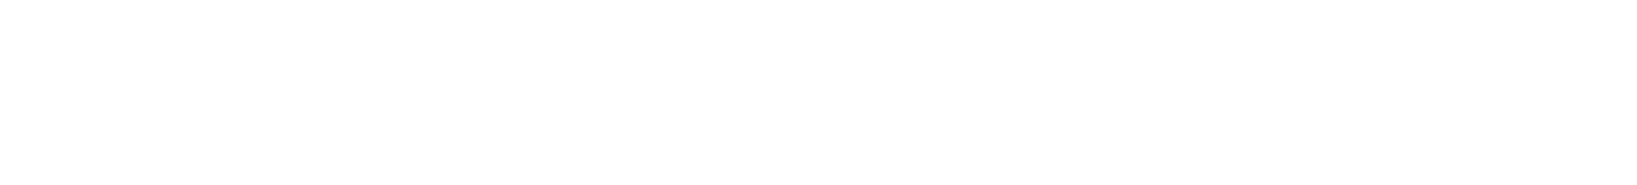 Nucor
 logo large for dark backgrounds (transparent PNG)